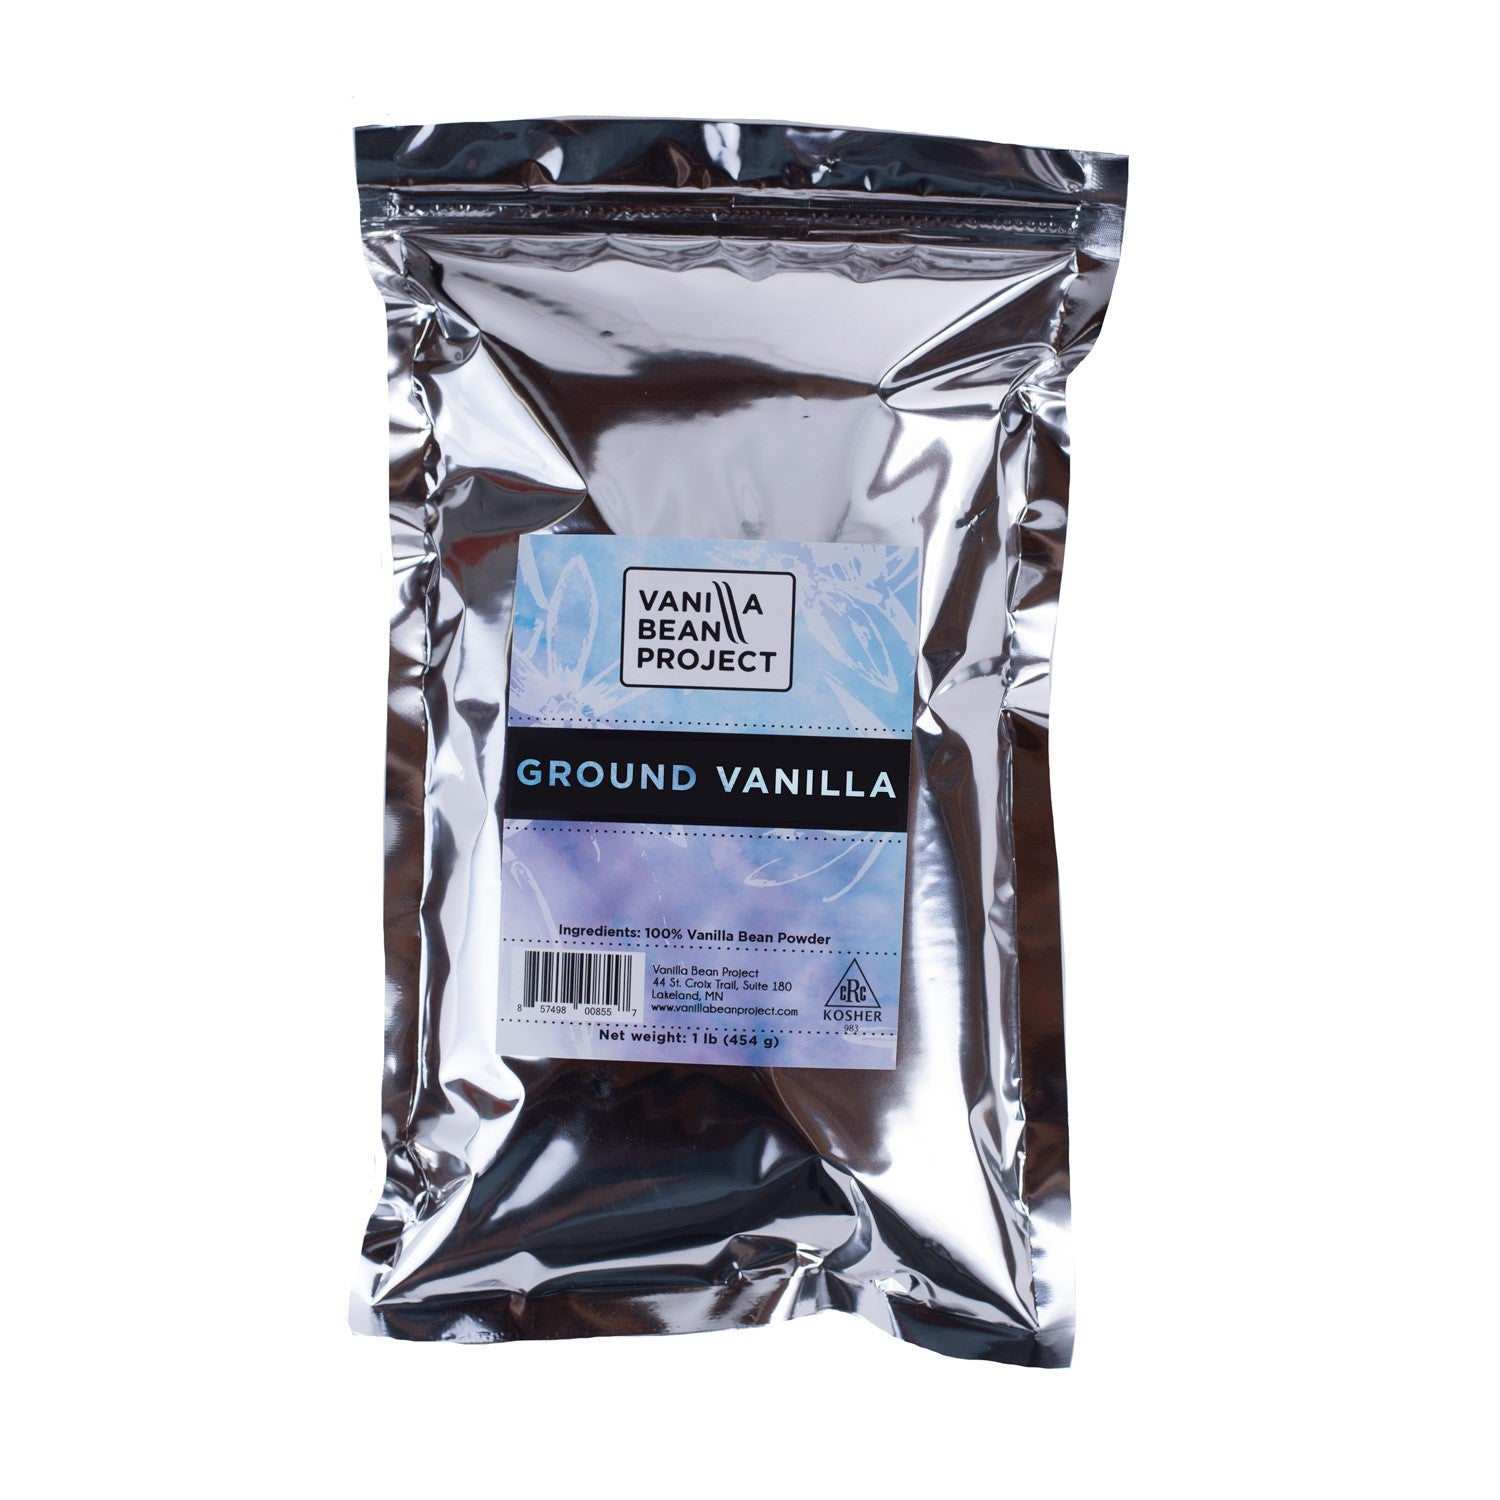 Ground Vanilla - Vanilla Bean Project